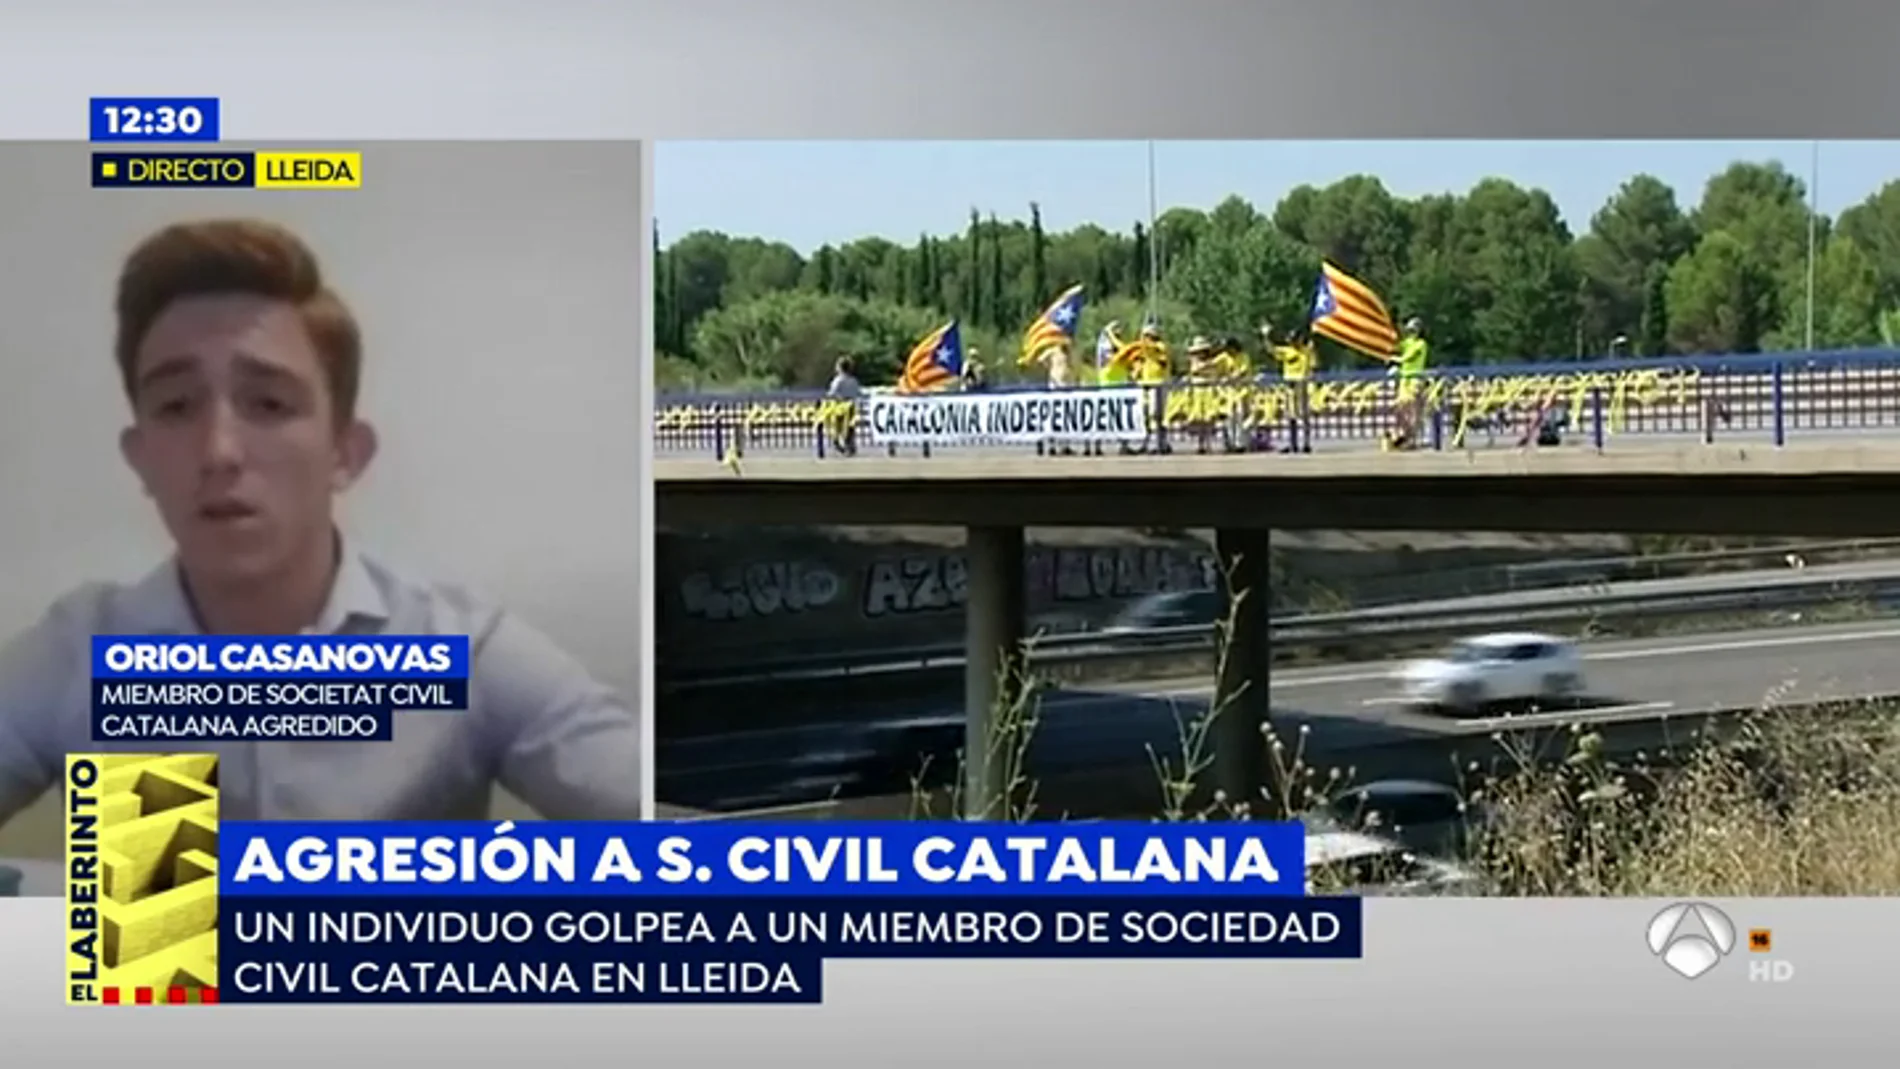 Secretario territorial de Sociedad Civil Catalana agredido en Lleida: "Esto no nos va a acobardar ni nos va a silenciar"